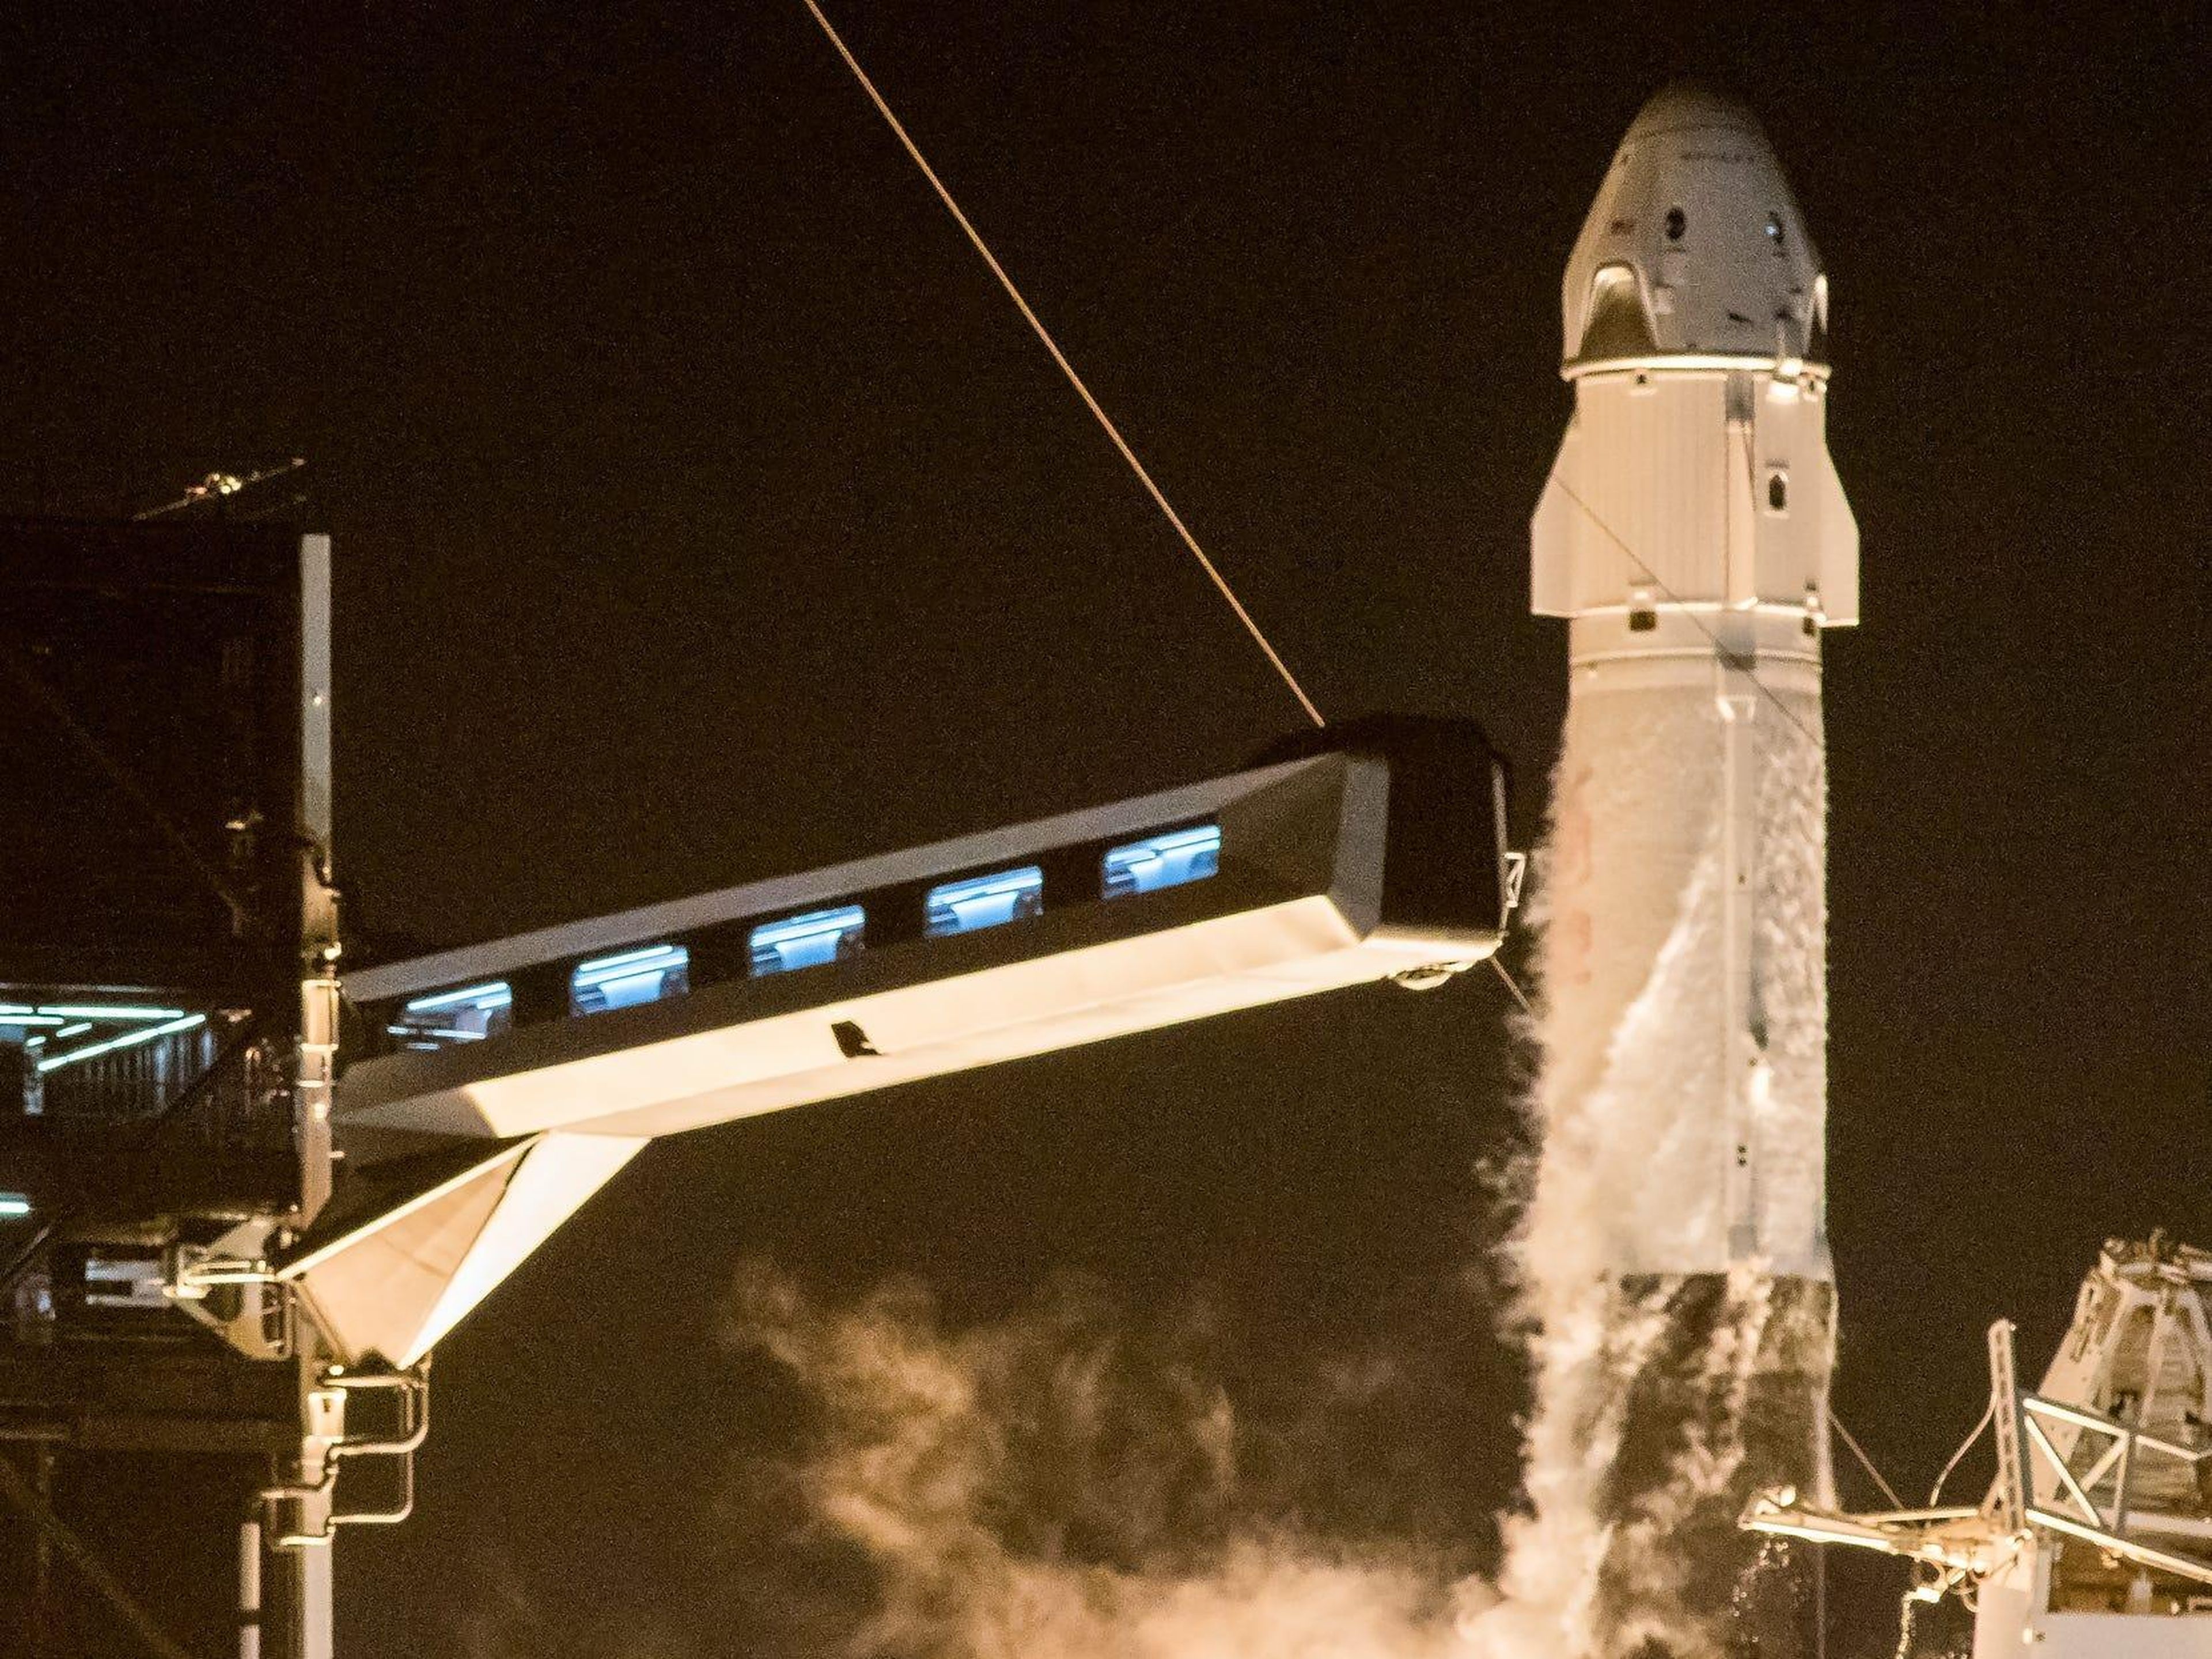 El 15 de noviembre, 4 astronautas fueron lanzados a bordo de la Crew Dragon Resillence, nave de SpaceX